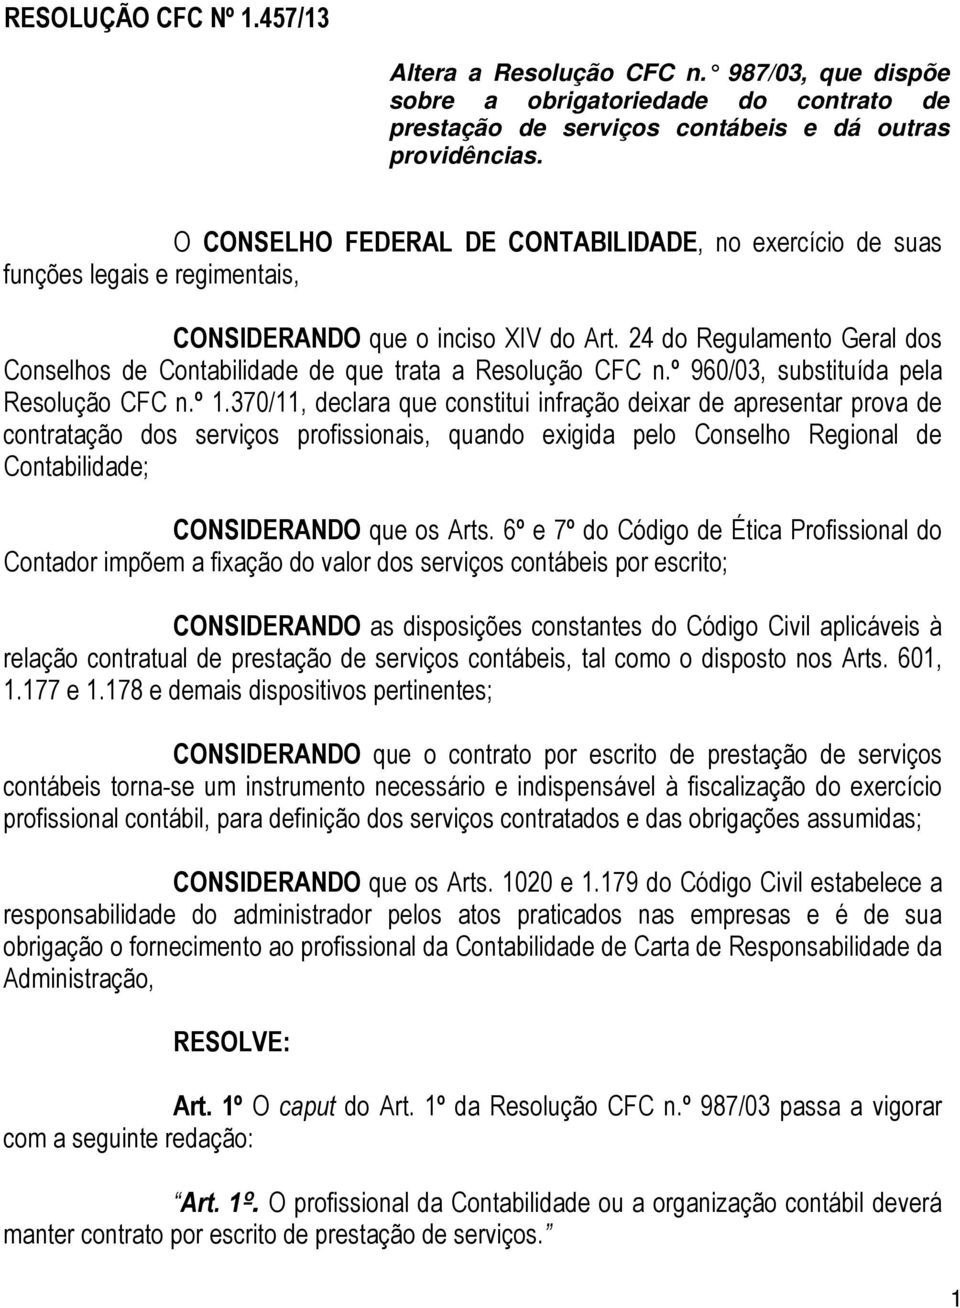 24 do Regulamento Geral dos Conselhos de Contabilidade de que trata a Resolução CFC n.º 960/03, substituída pela Resolução CFC n.º 1.